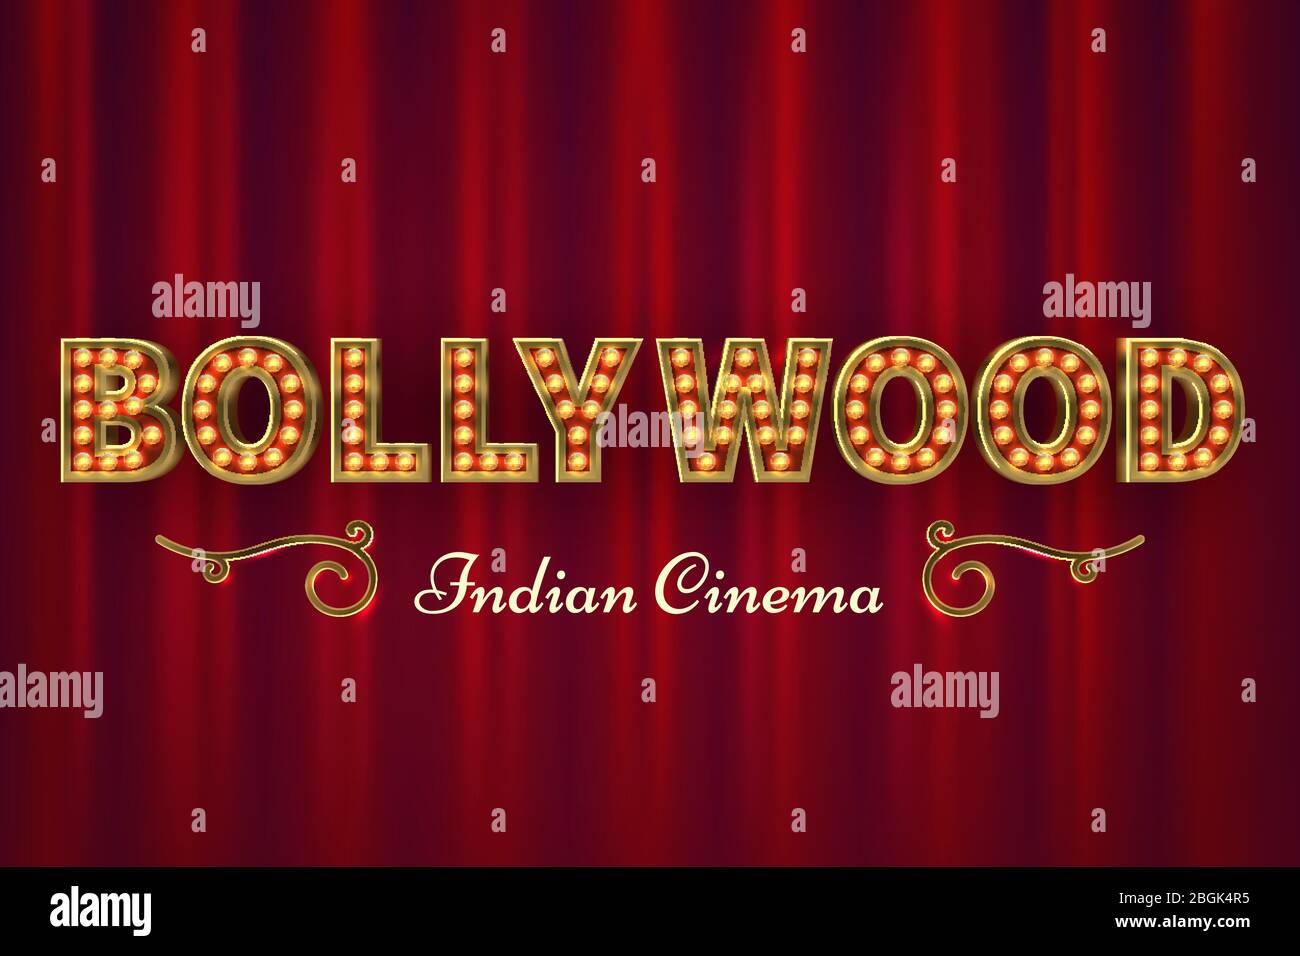 Bollywood-Kino-Poster. Vintage indian klassischen Film Vektor Hintergrund mit roten Vorhängen. Illustration des Schriftzüges bollywood india, Kinematographie Event Cinema Stock Vektor